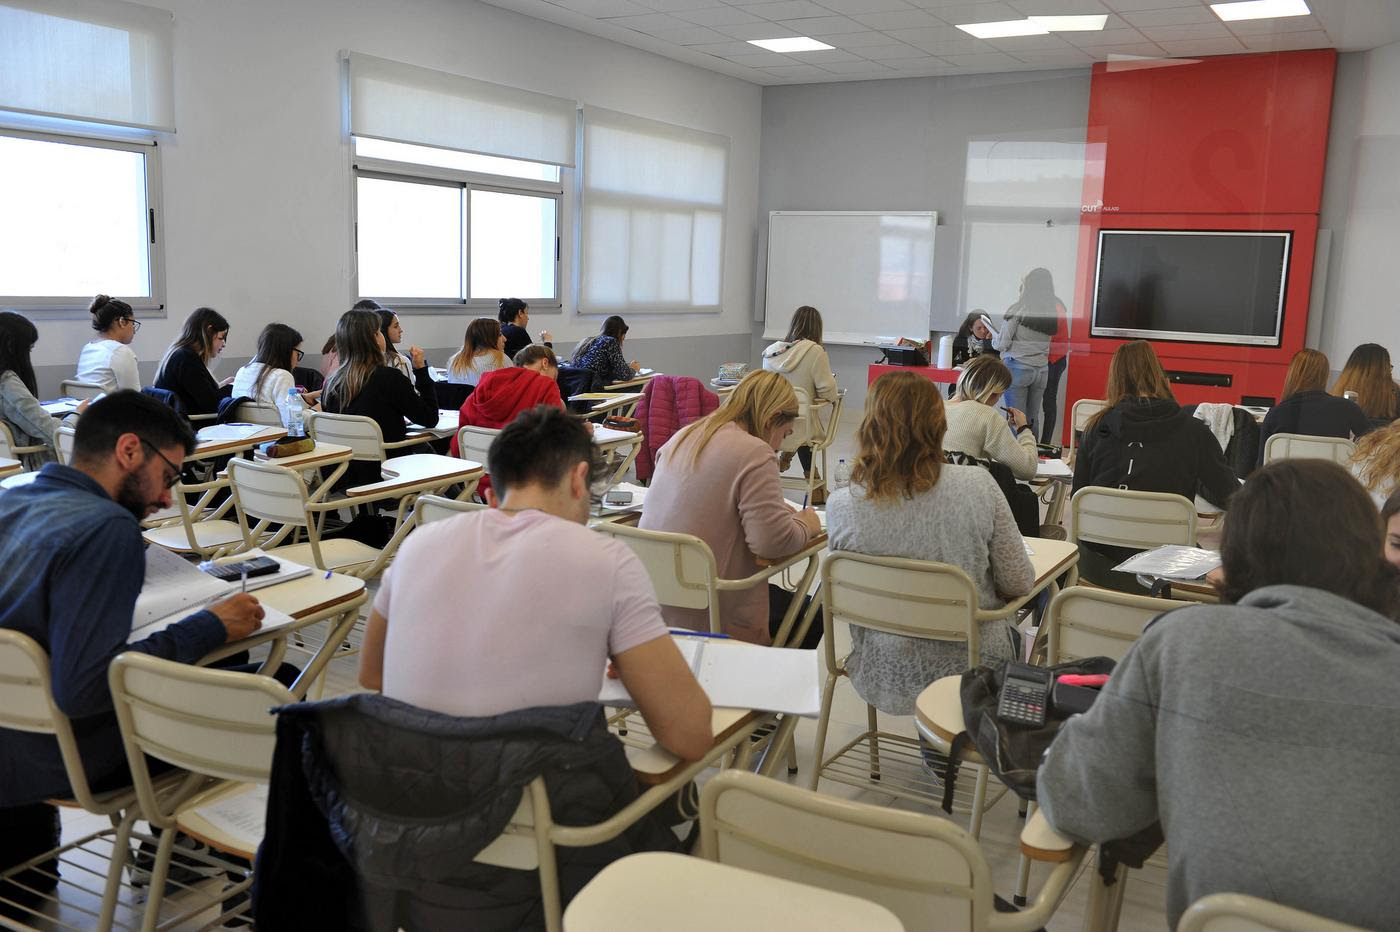  El Centro Universitario  ofrece cursos gratuitos de inglés